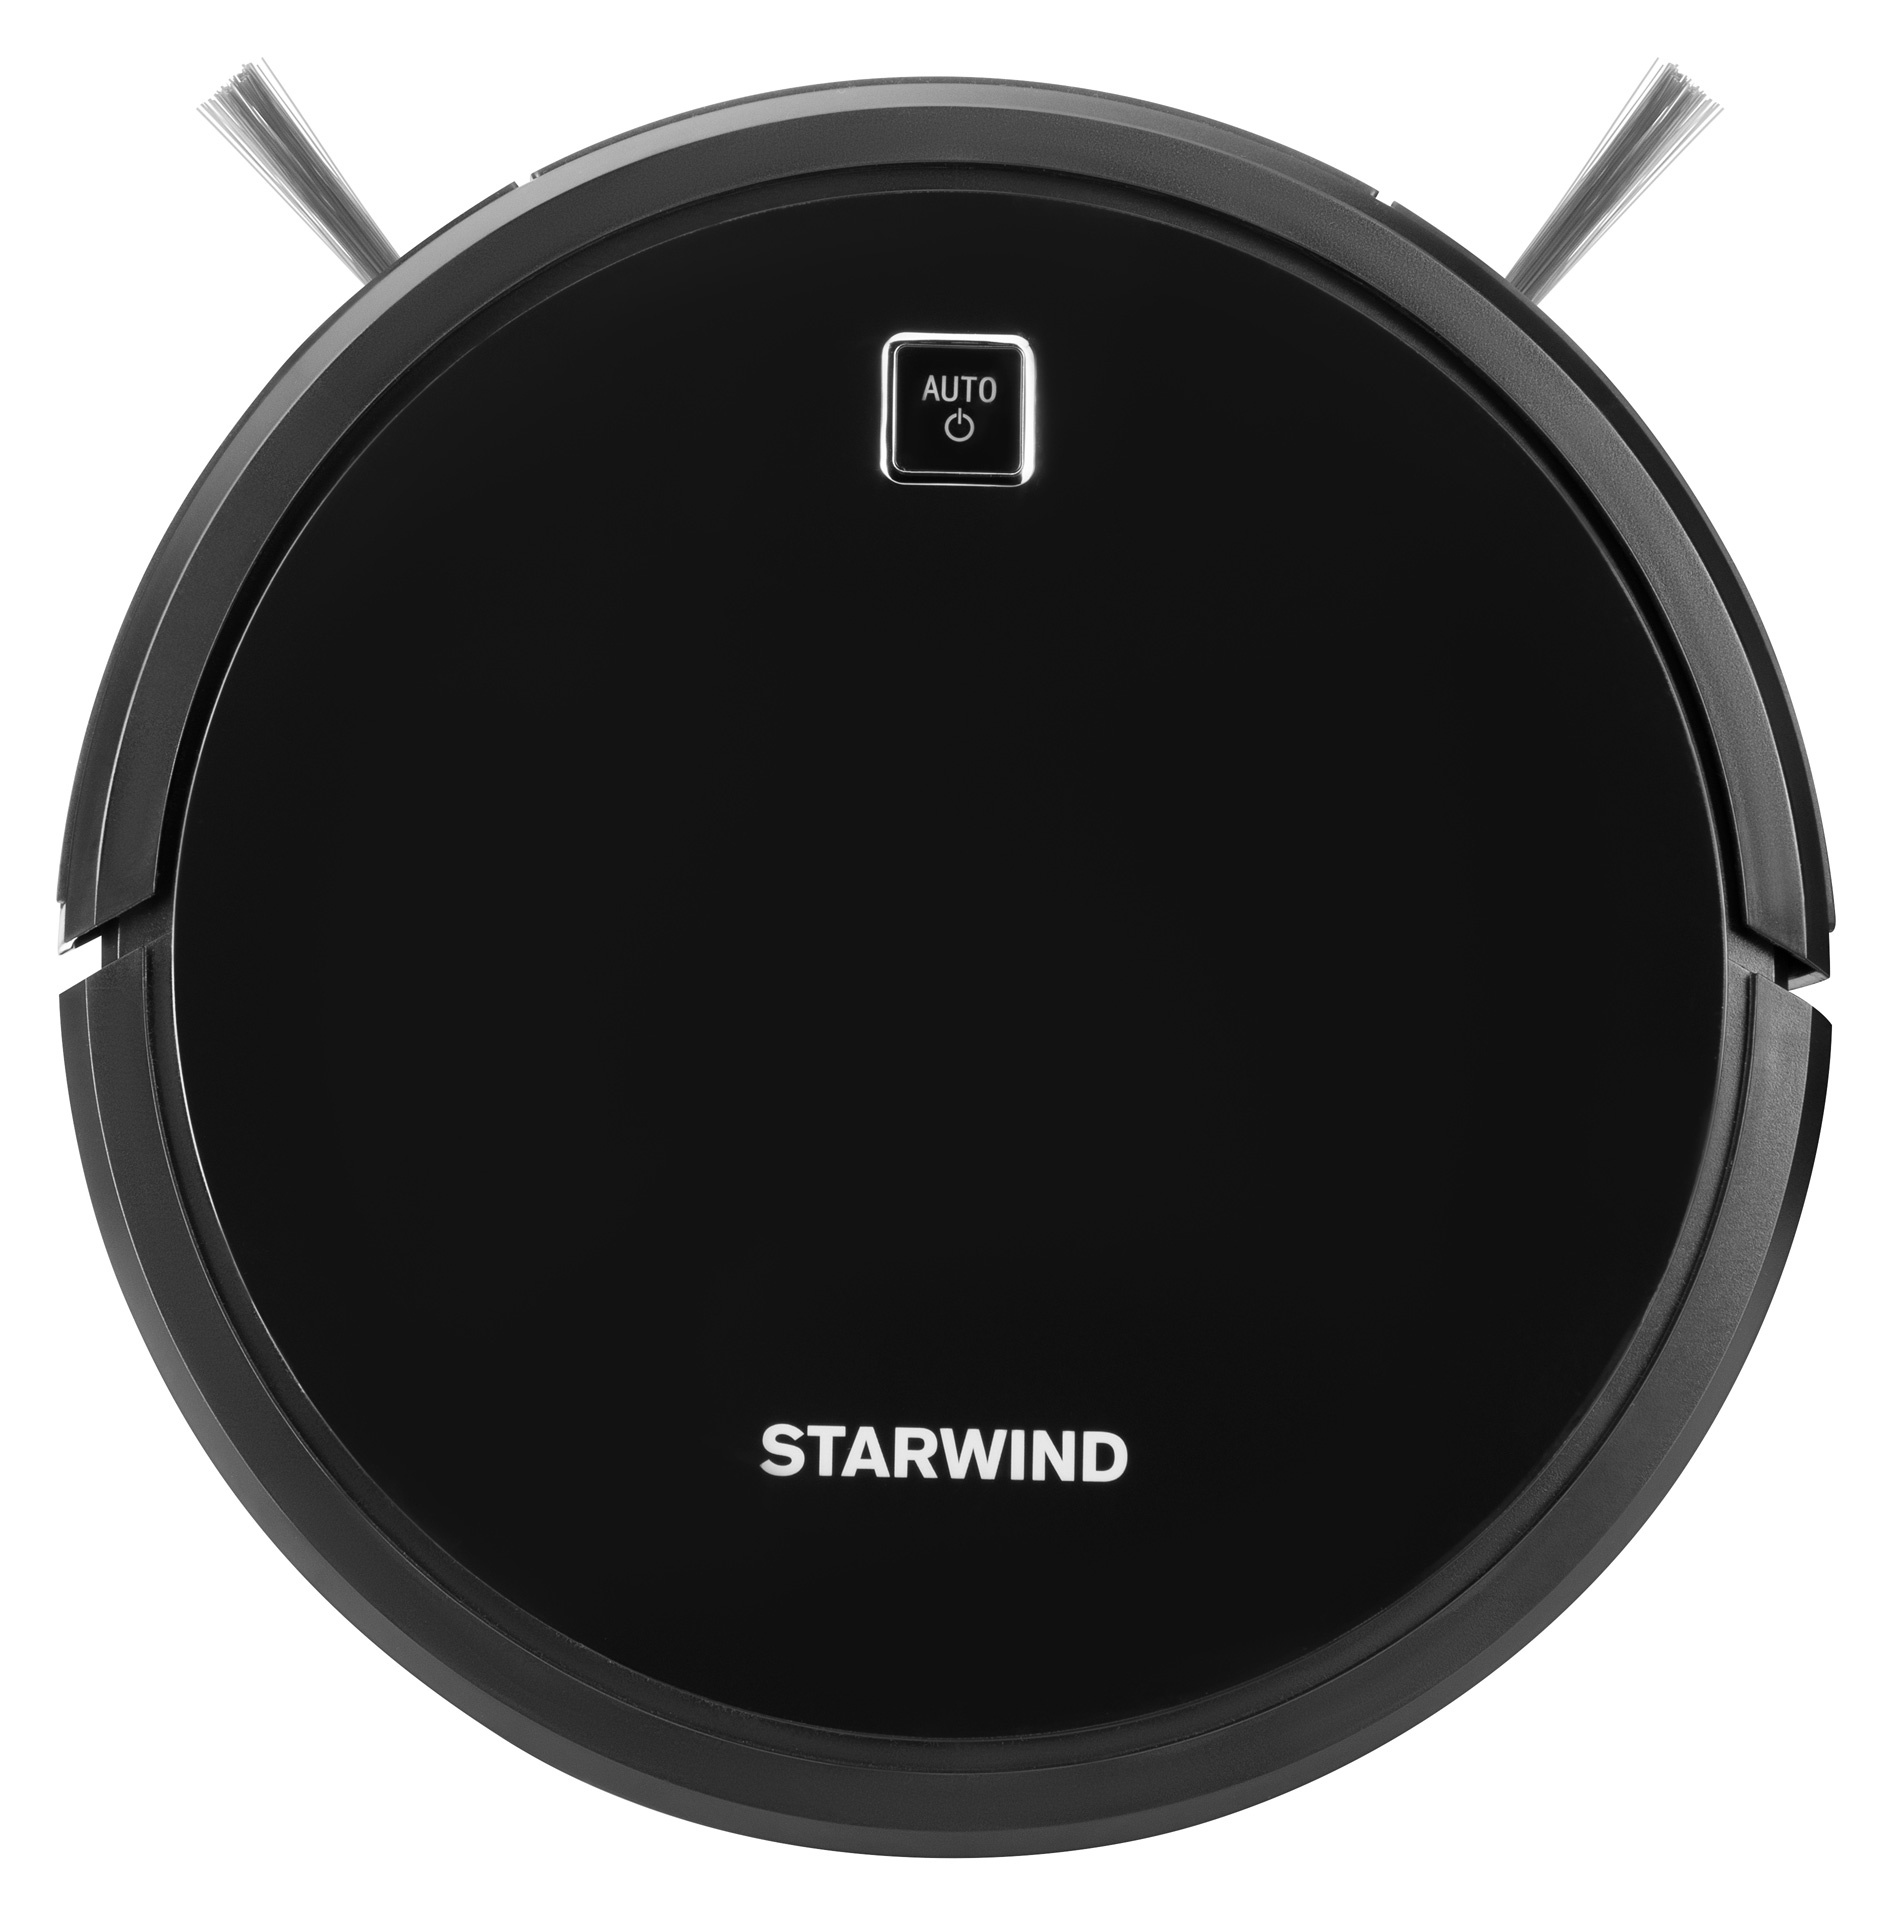 Робот-пылесос Starwind SRV7770 черный от магазина Старвинд